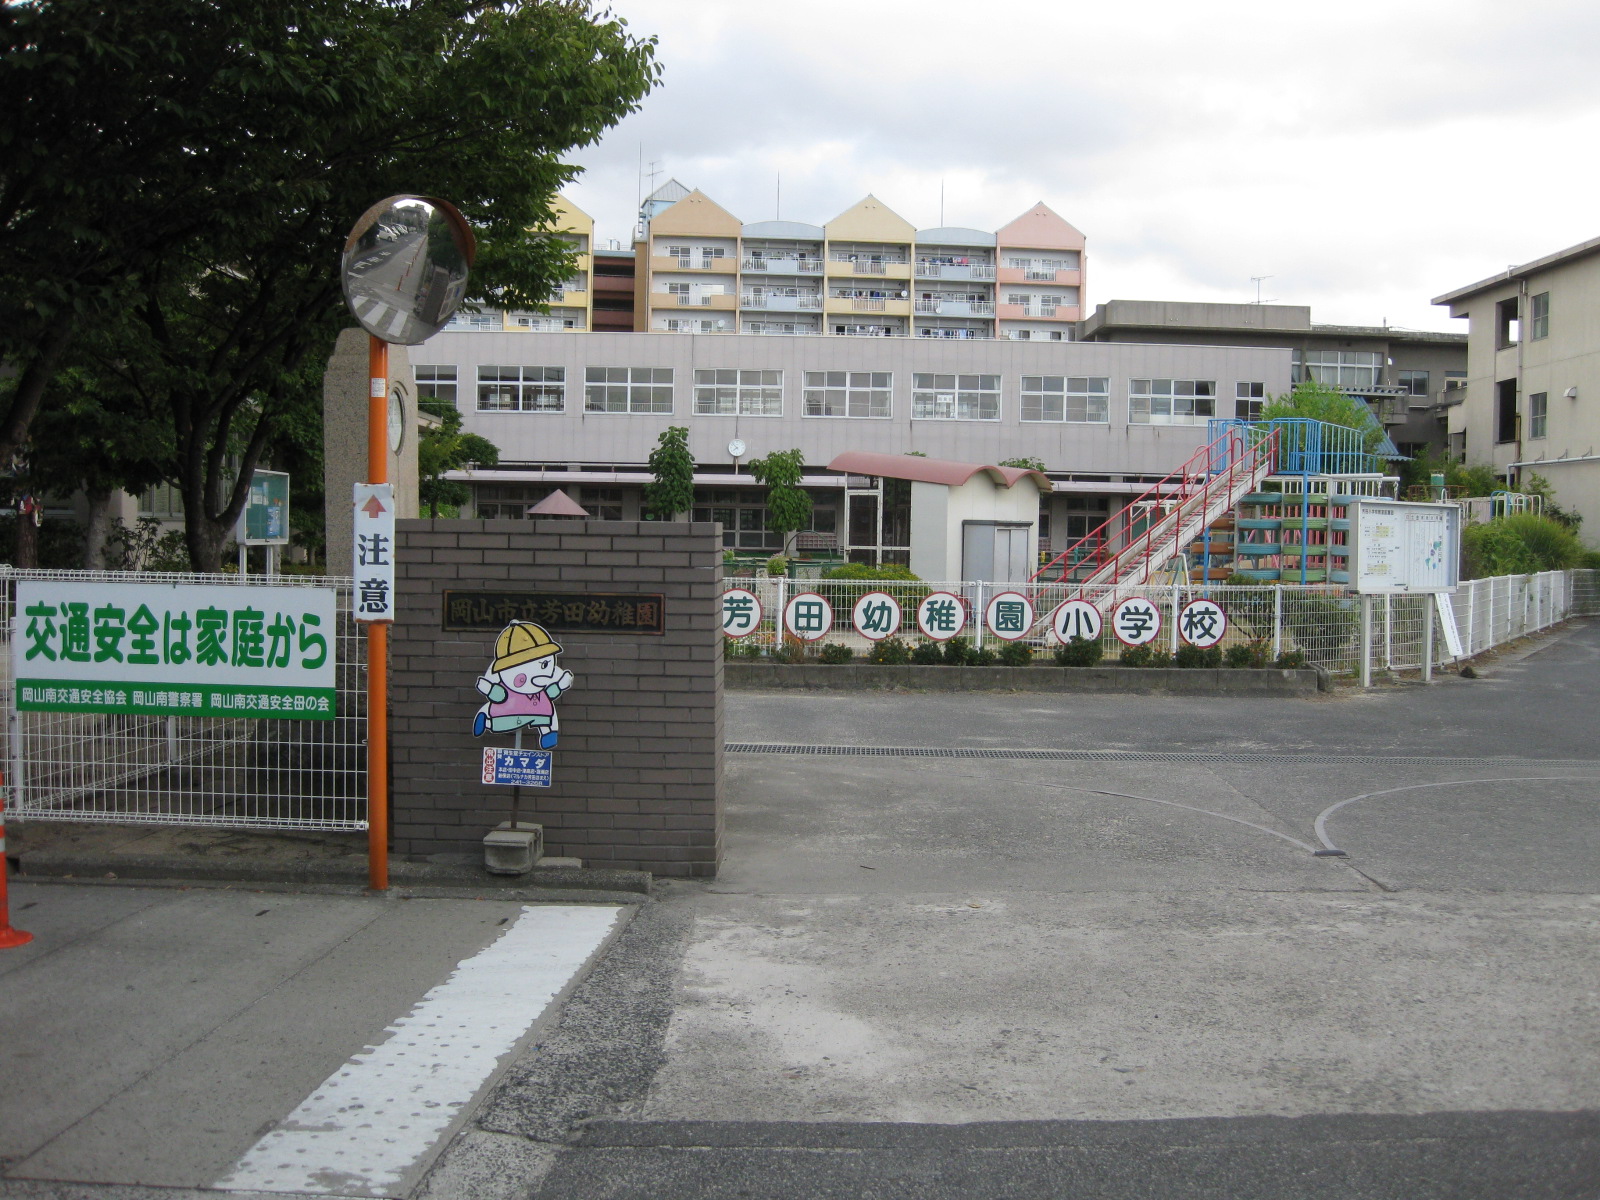 kindergarten ・ Nursery. Okayama Yoshida kindergarten (kindergarten ・ 727m to the nursery)